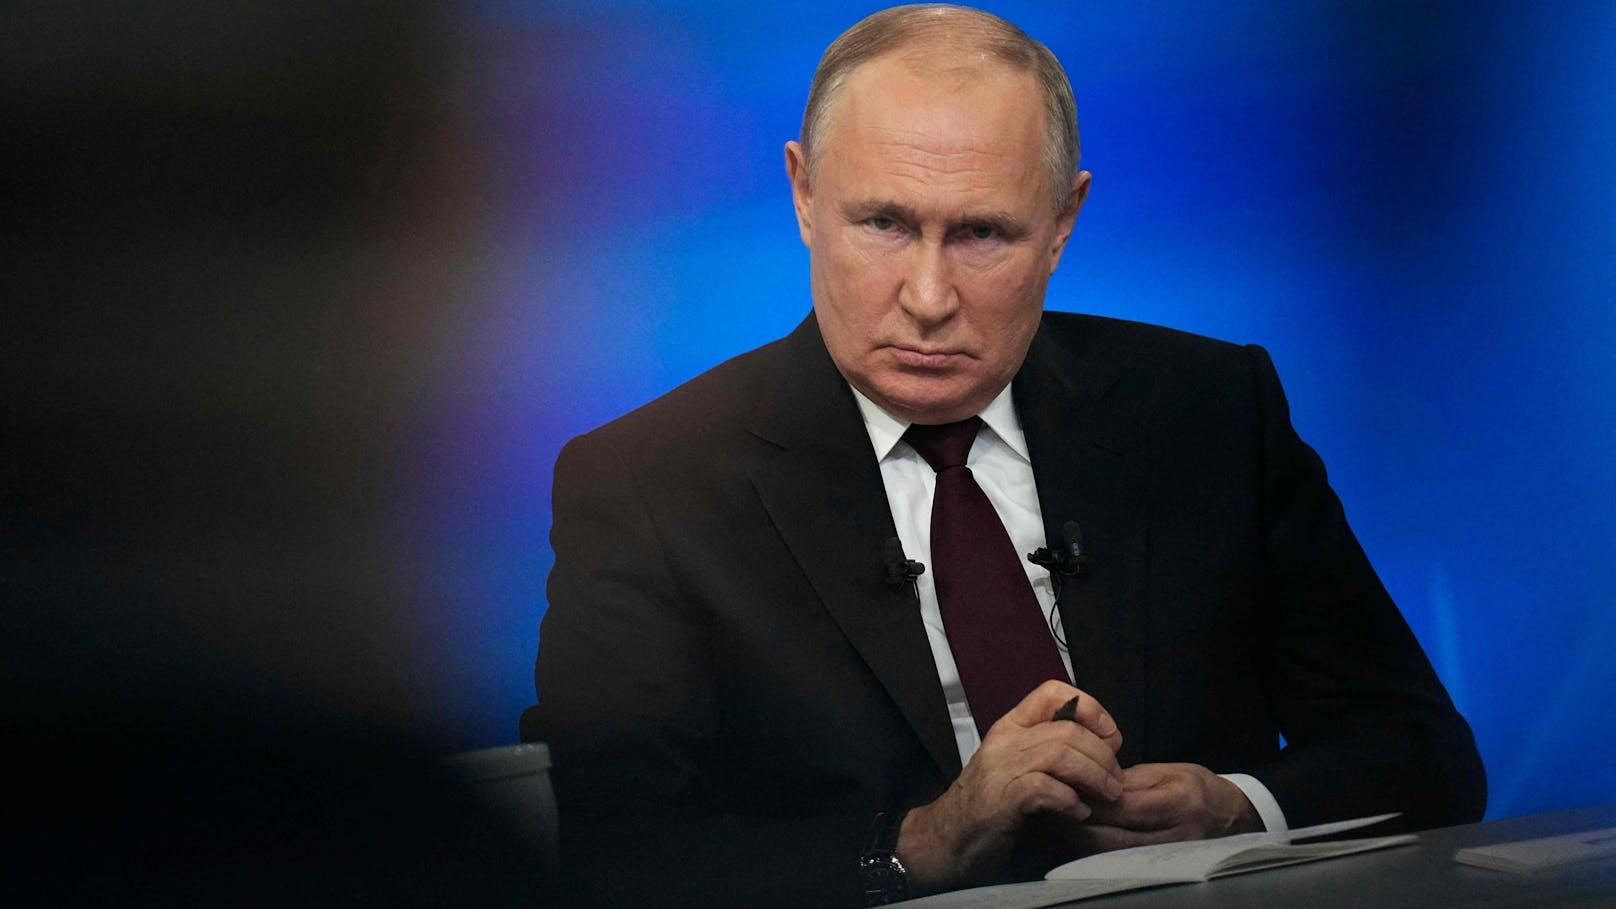 Einmal mehr sprach Putin auch vom Ziel einer "Entnazifizierung" der Ukraine. Er will stattdessen eine russlandtreue Regierung einsetzen.